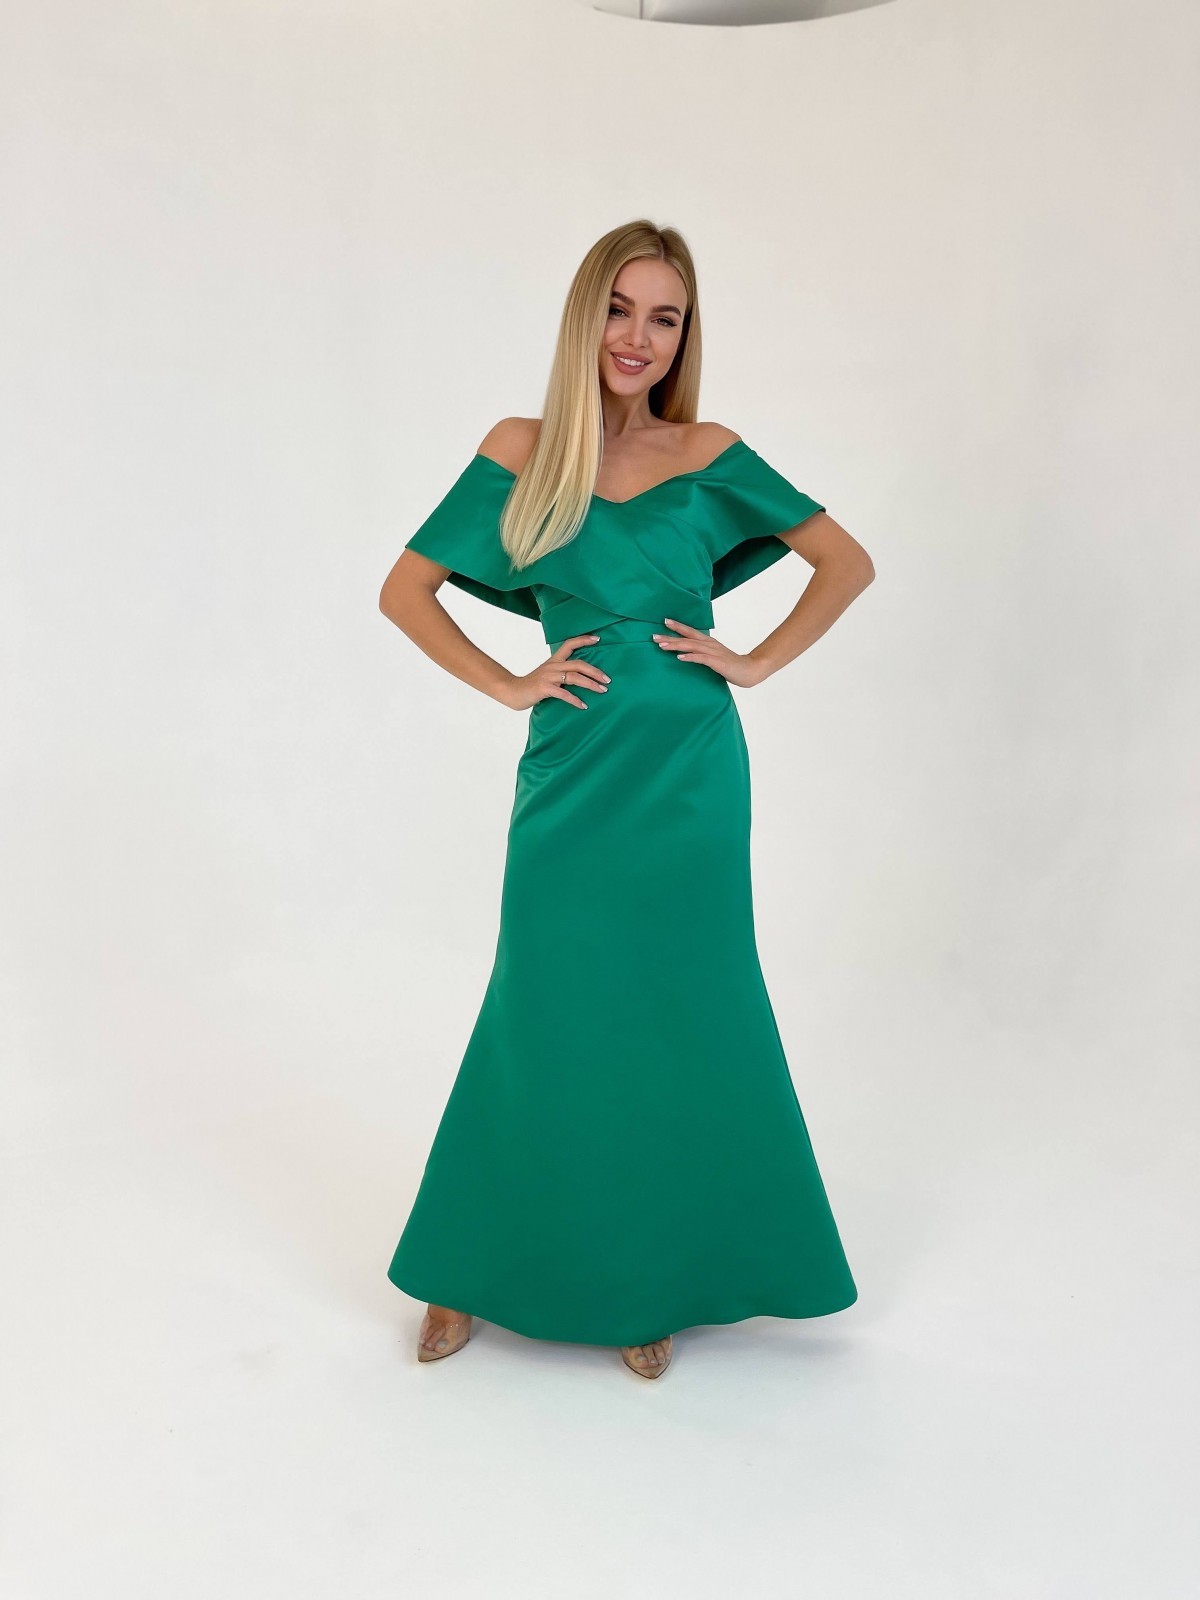 Жіноча вечірня сукня корсет зеленого кольору 372849